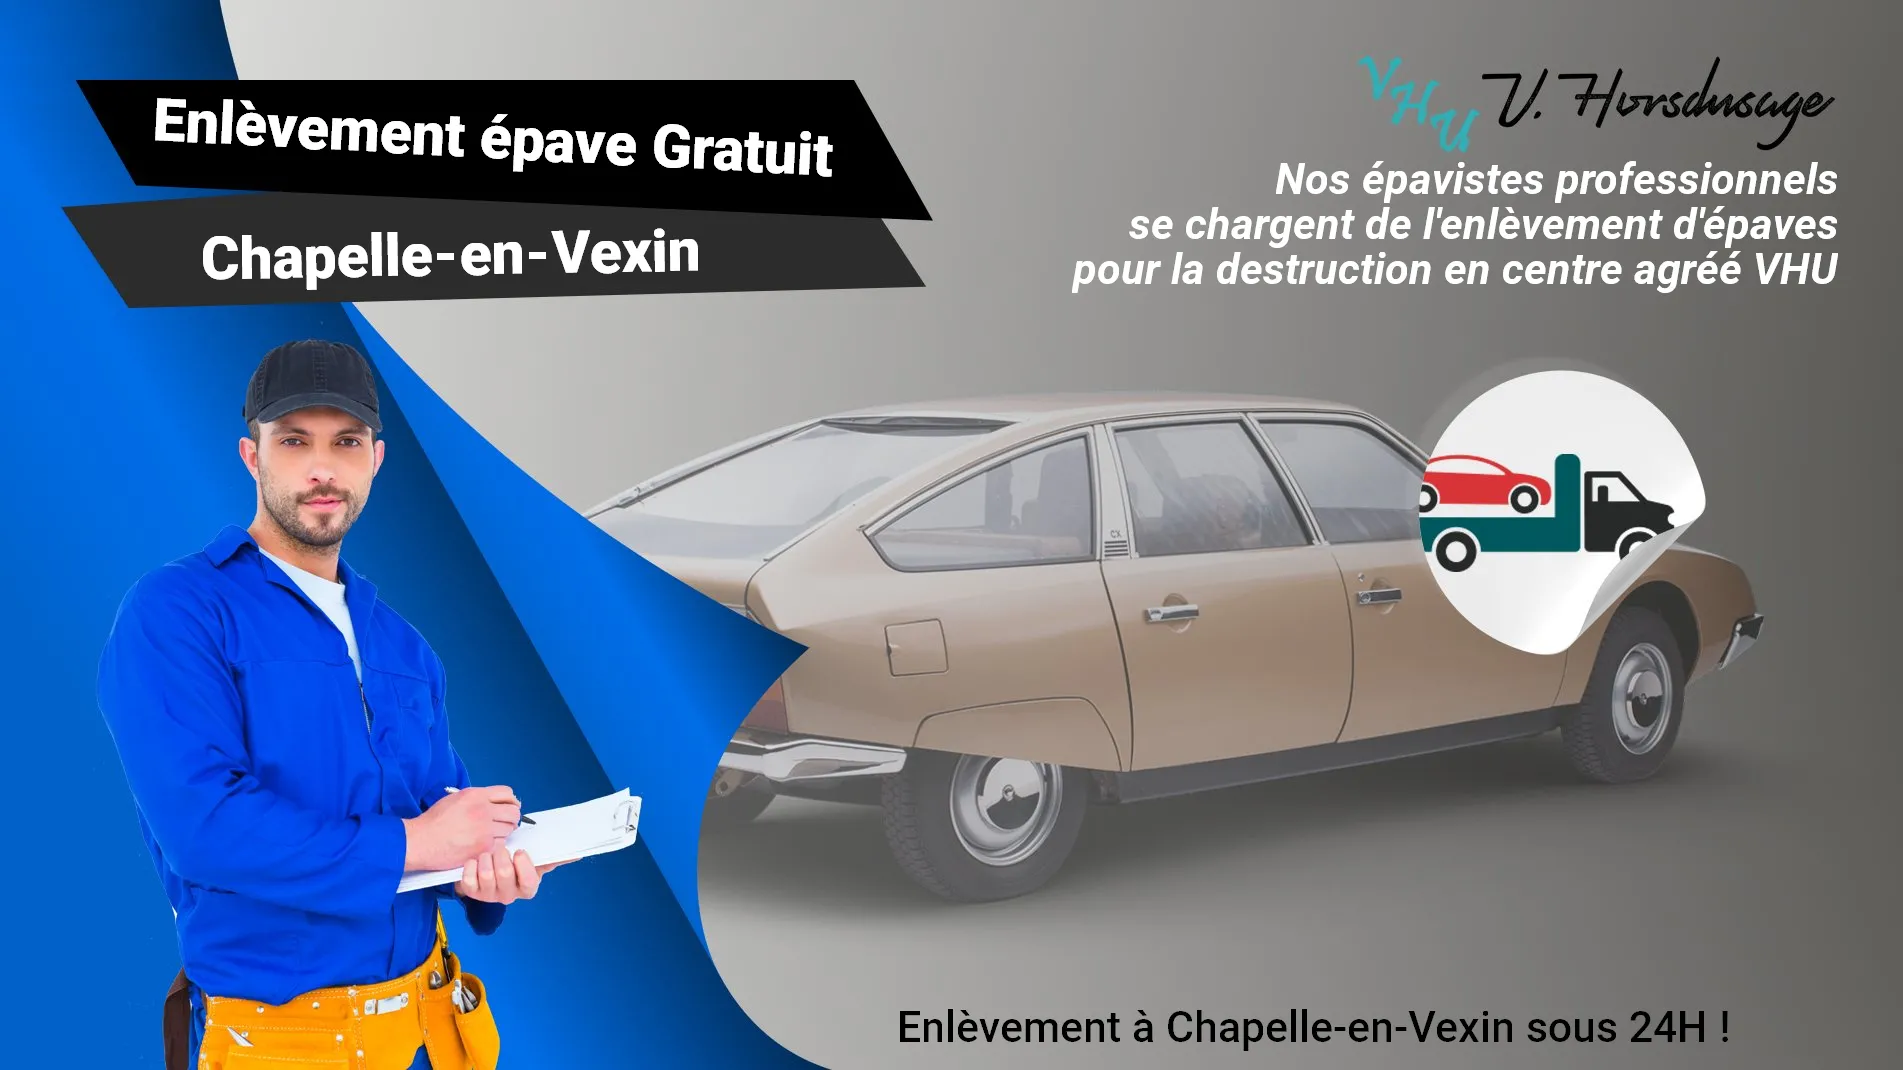 Pour un enlèvement gratuit à Chapelle-en-Vexin, contactez nos épavistes agréé VHU